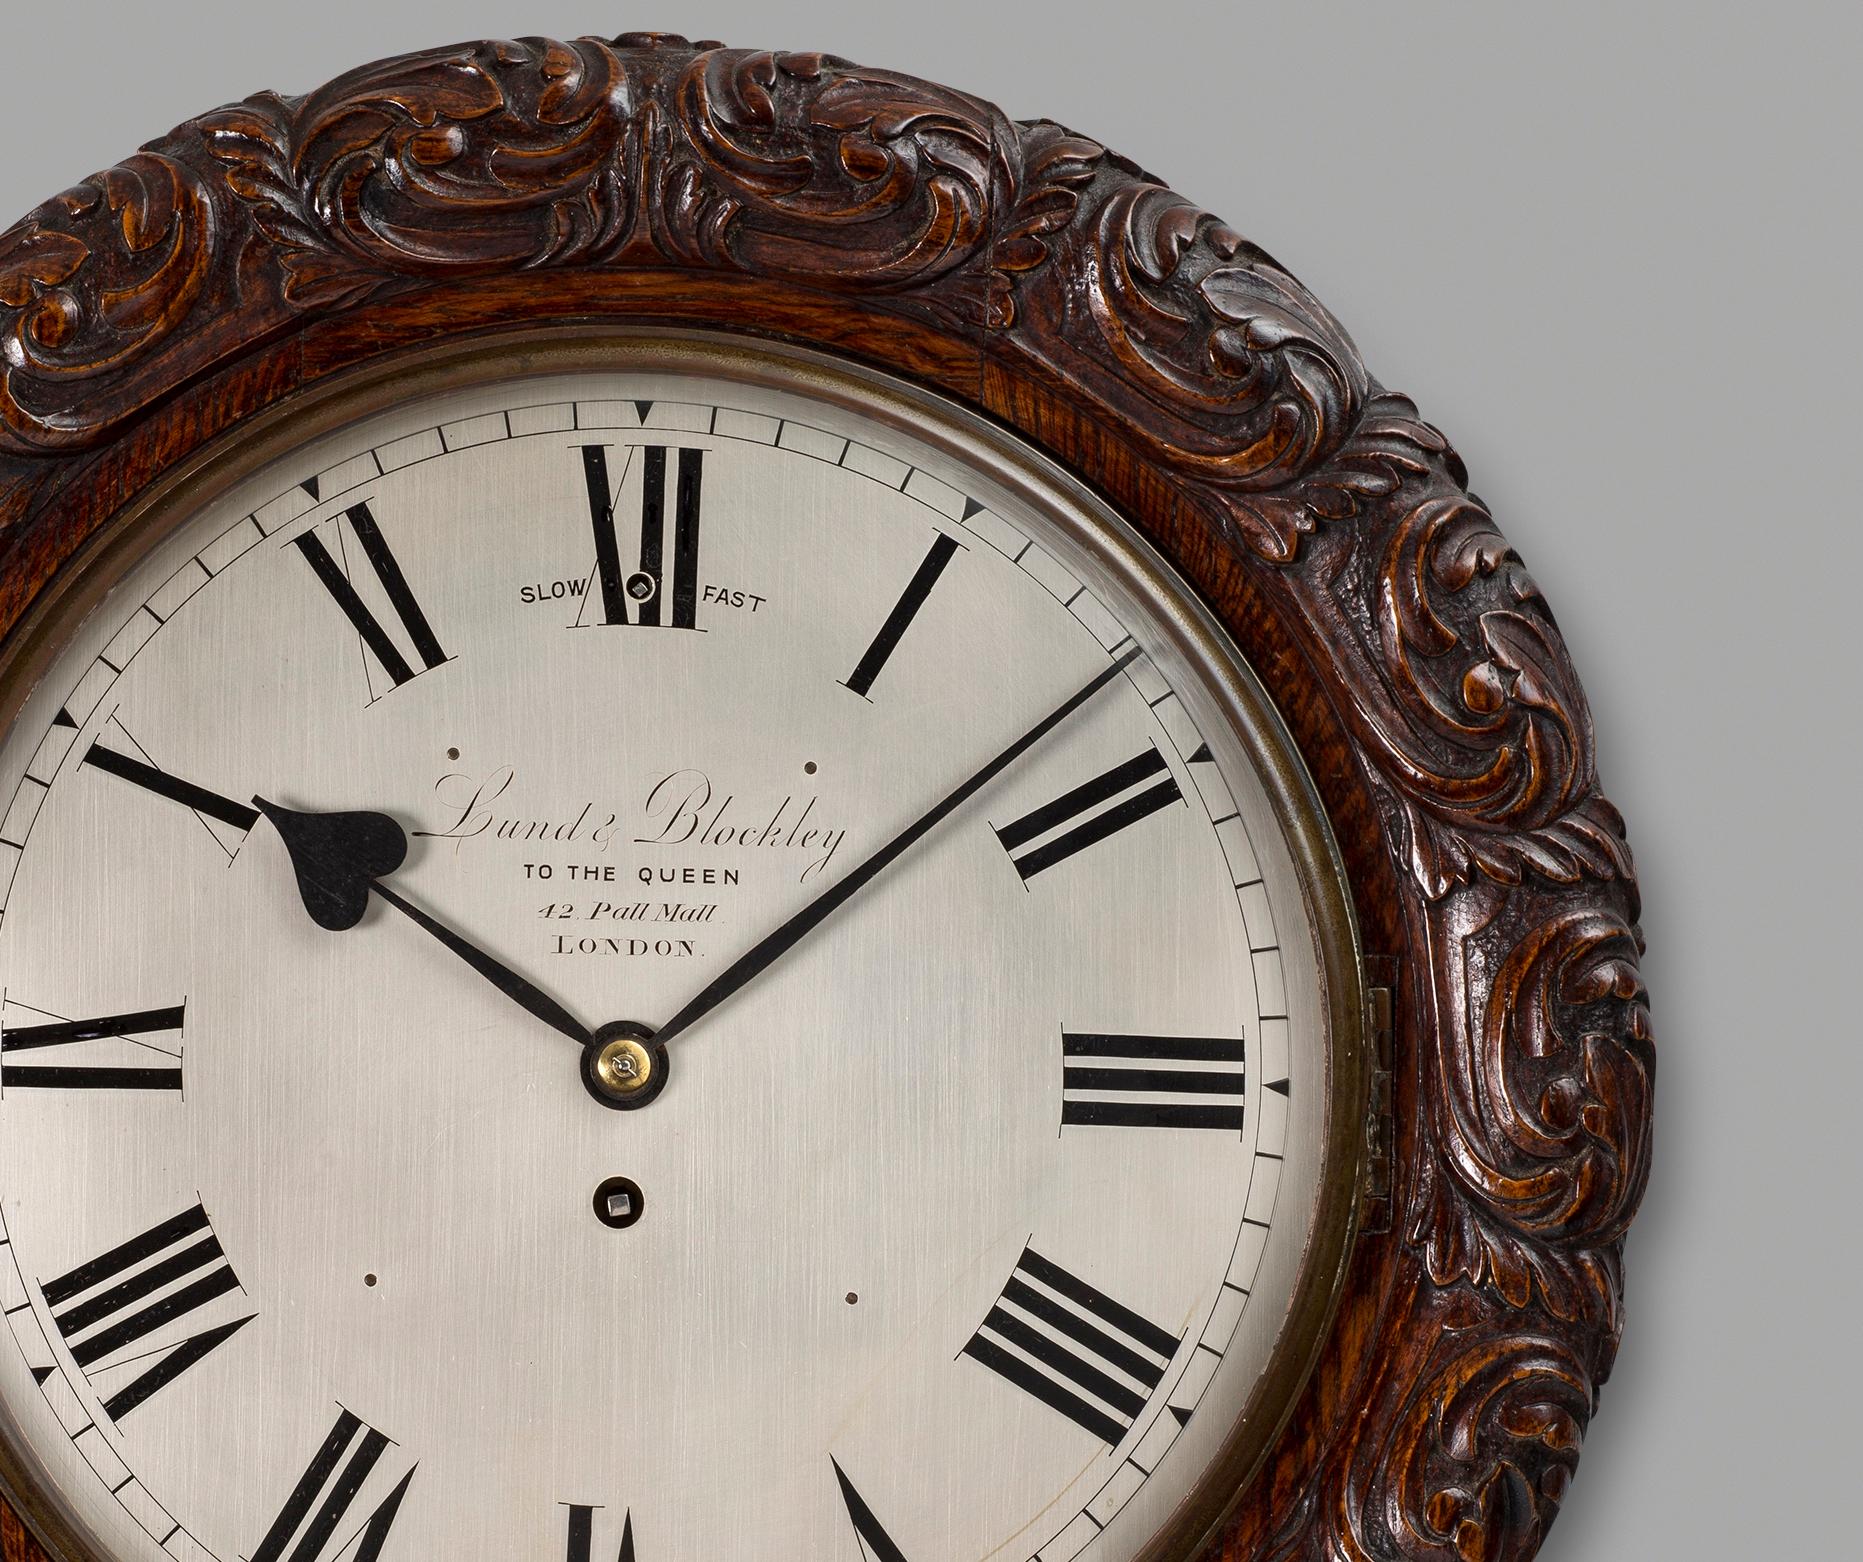 Eine hochwertige, antike Wanduhr mit viktorianischem Eichengehäuse von dieser bekannten Uhrenmanufaktur. Das runde Gehäuse aus massiver Eiche hat eine Einfassung für das Zifferblatt, das mit fließendem Rankenwerk und Blattwerk außergewöhnlich gut